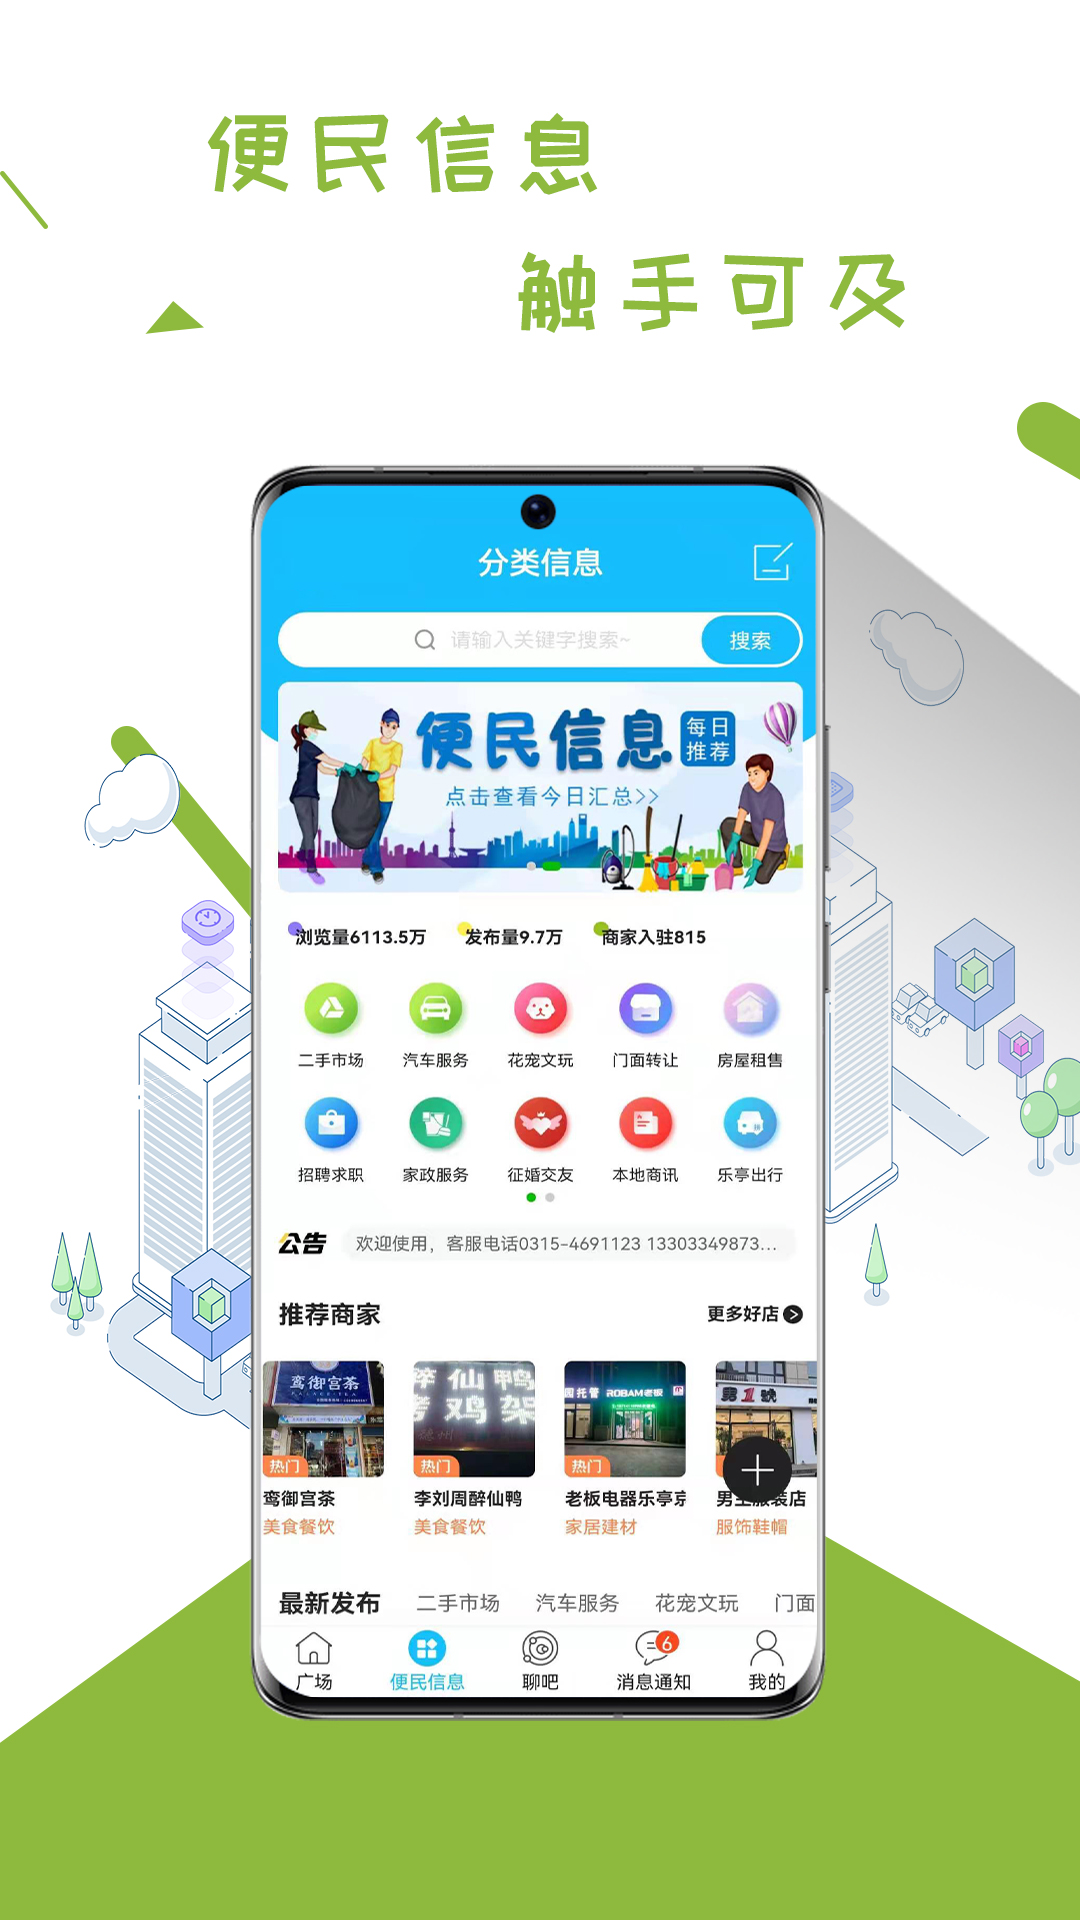 乐亭通app 5.4.1.915.5.1.91